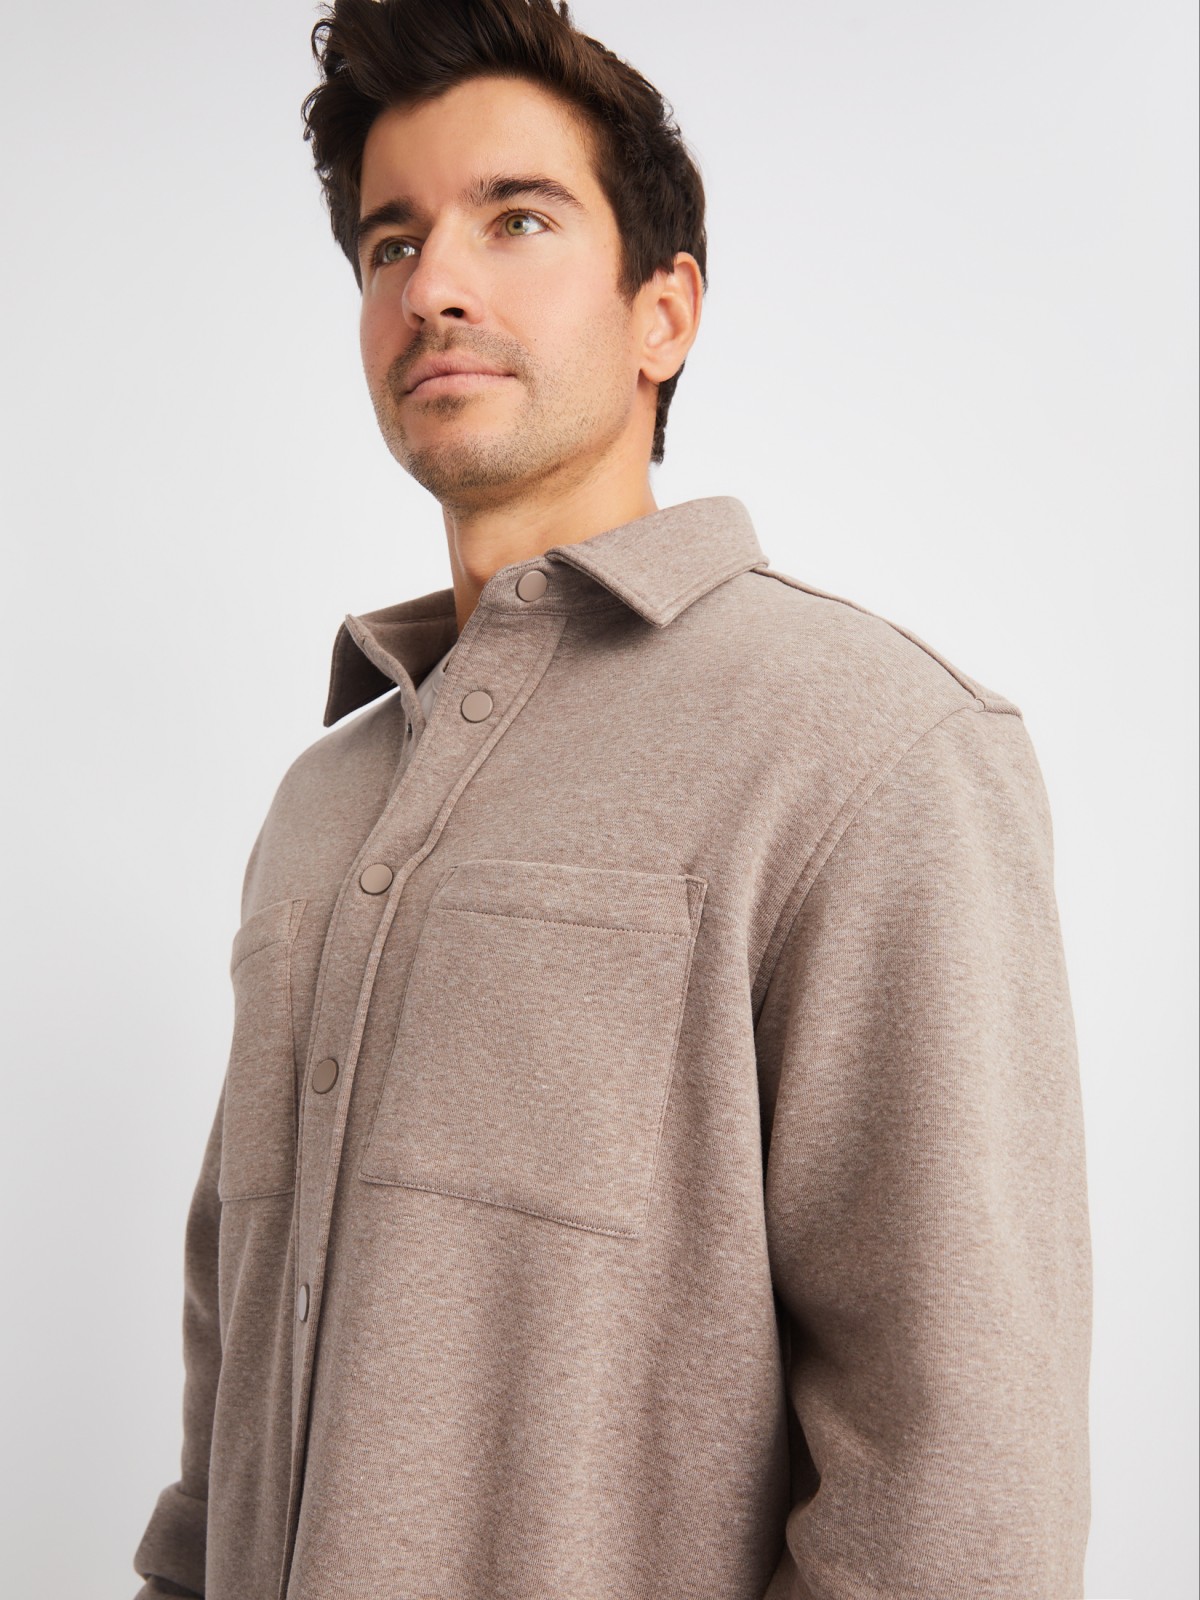 Утеплённая трикотажная куртка-рубашка с начёсом zolla 01411432F023, цвет коричневый, размер S - фото 3